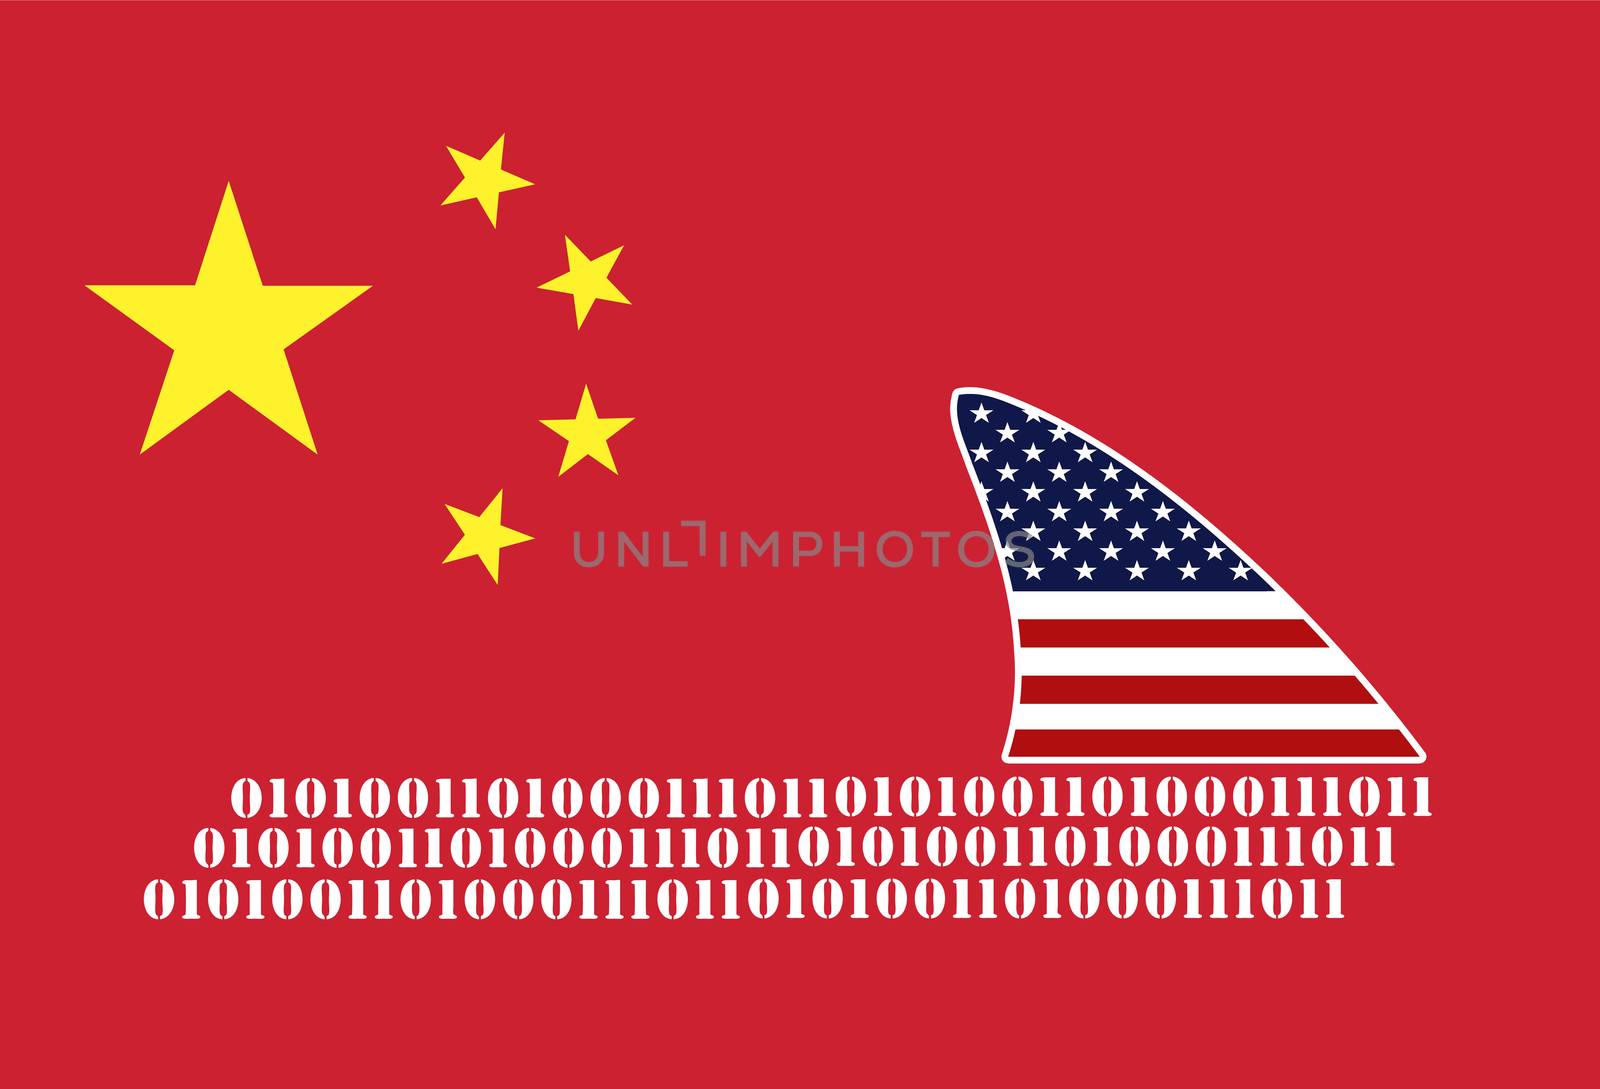 USA spying on China by Bambara